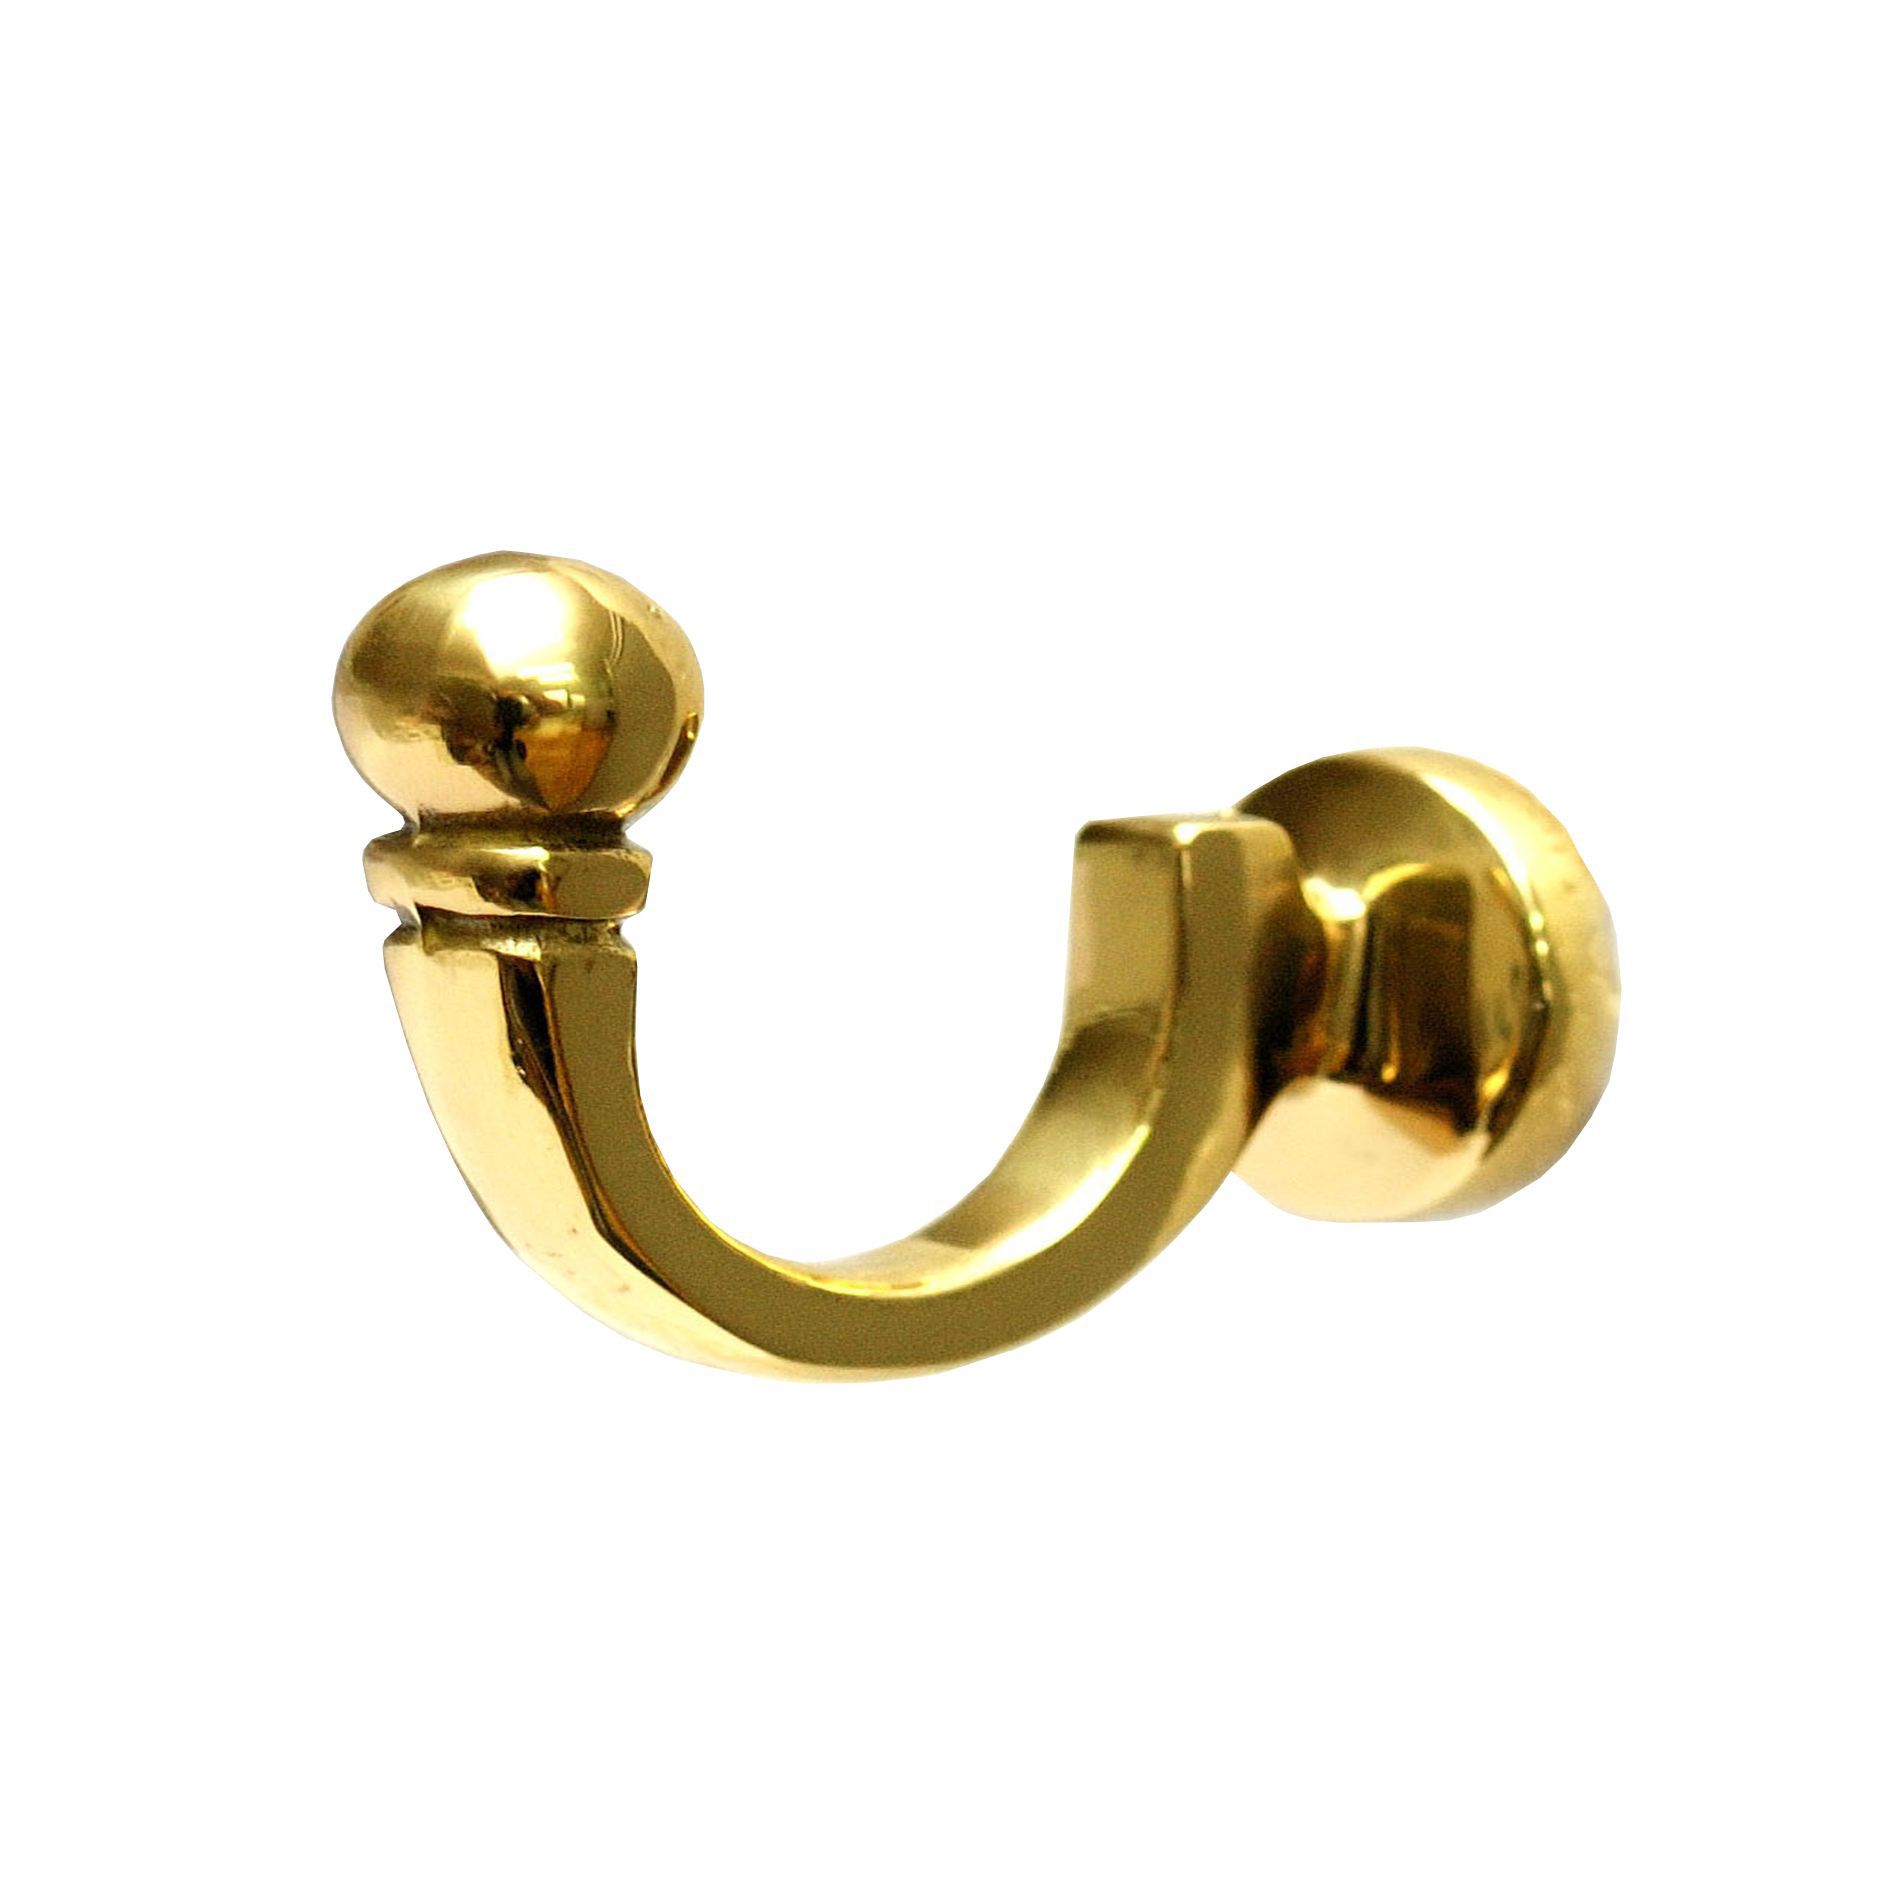 Antique effect Brass U-shaped Single Hook (H)23mm (W)53mm